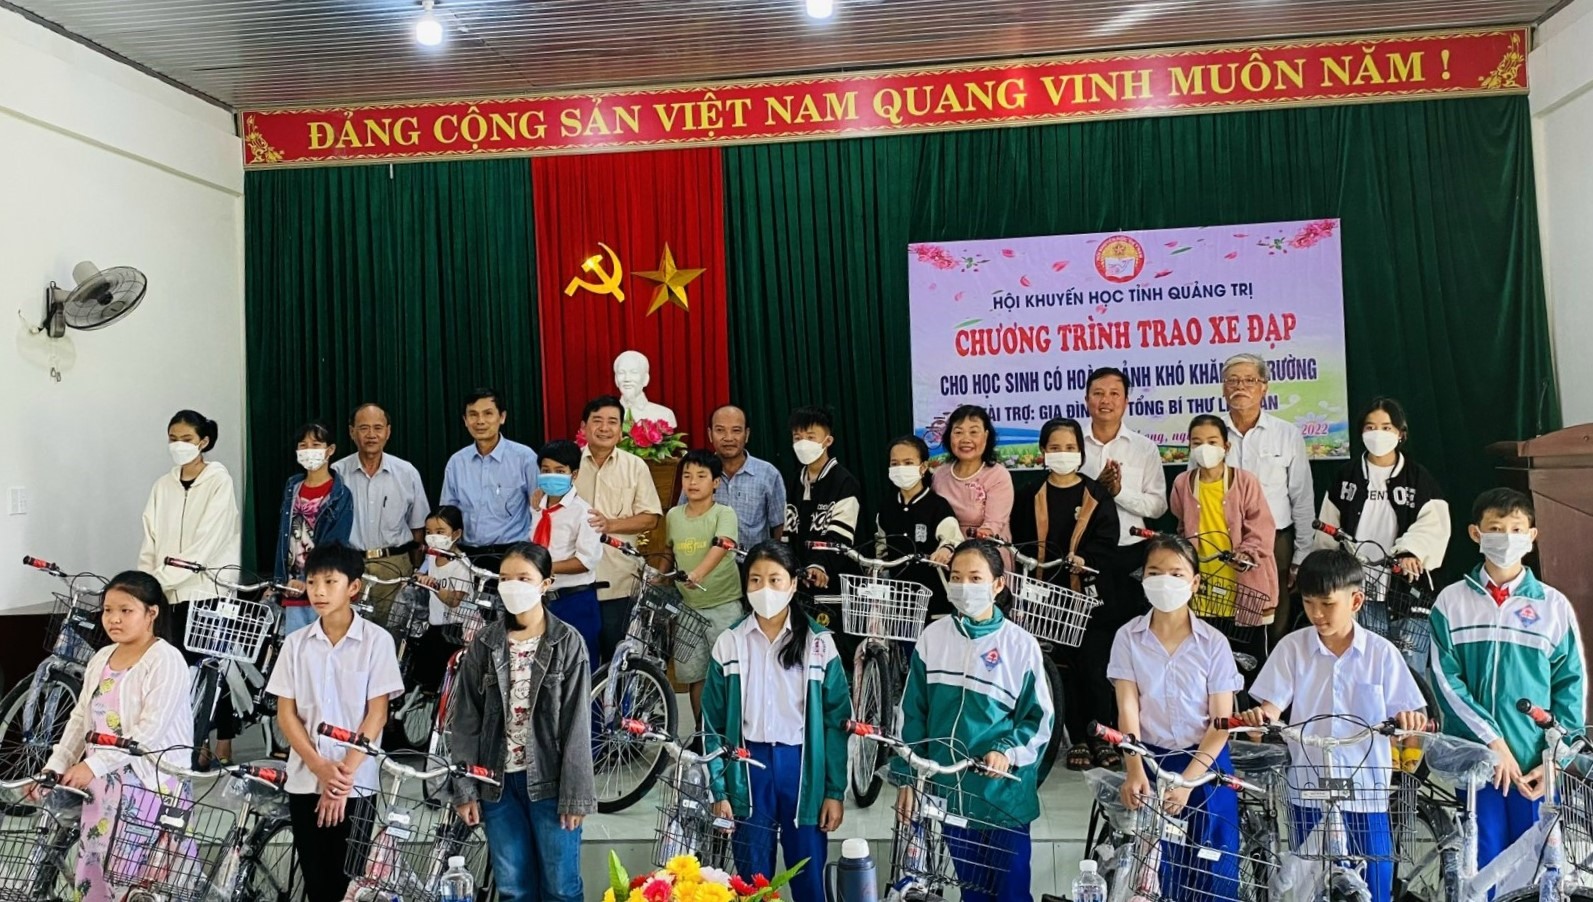 Chủ tịch Hội Khuyến học tỉnh Nguyễn Thị Hồng Vân cùng lãnh đạo huyện Triệu Phong trao xe đạp mới cho các em học sinh nghèo - Ảnh: H.A